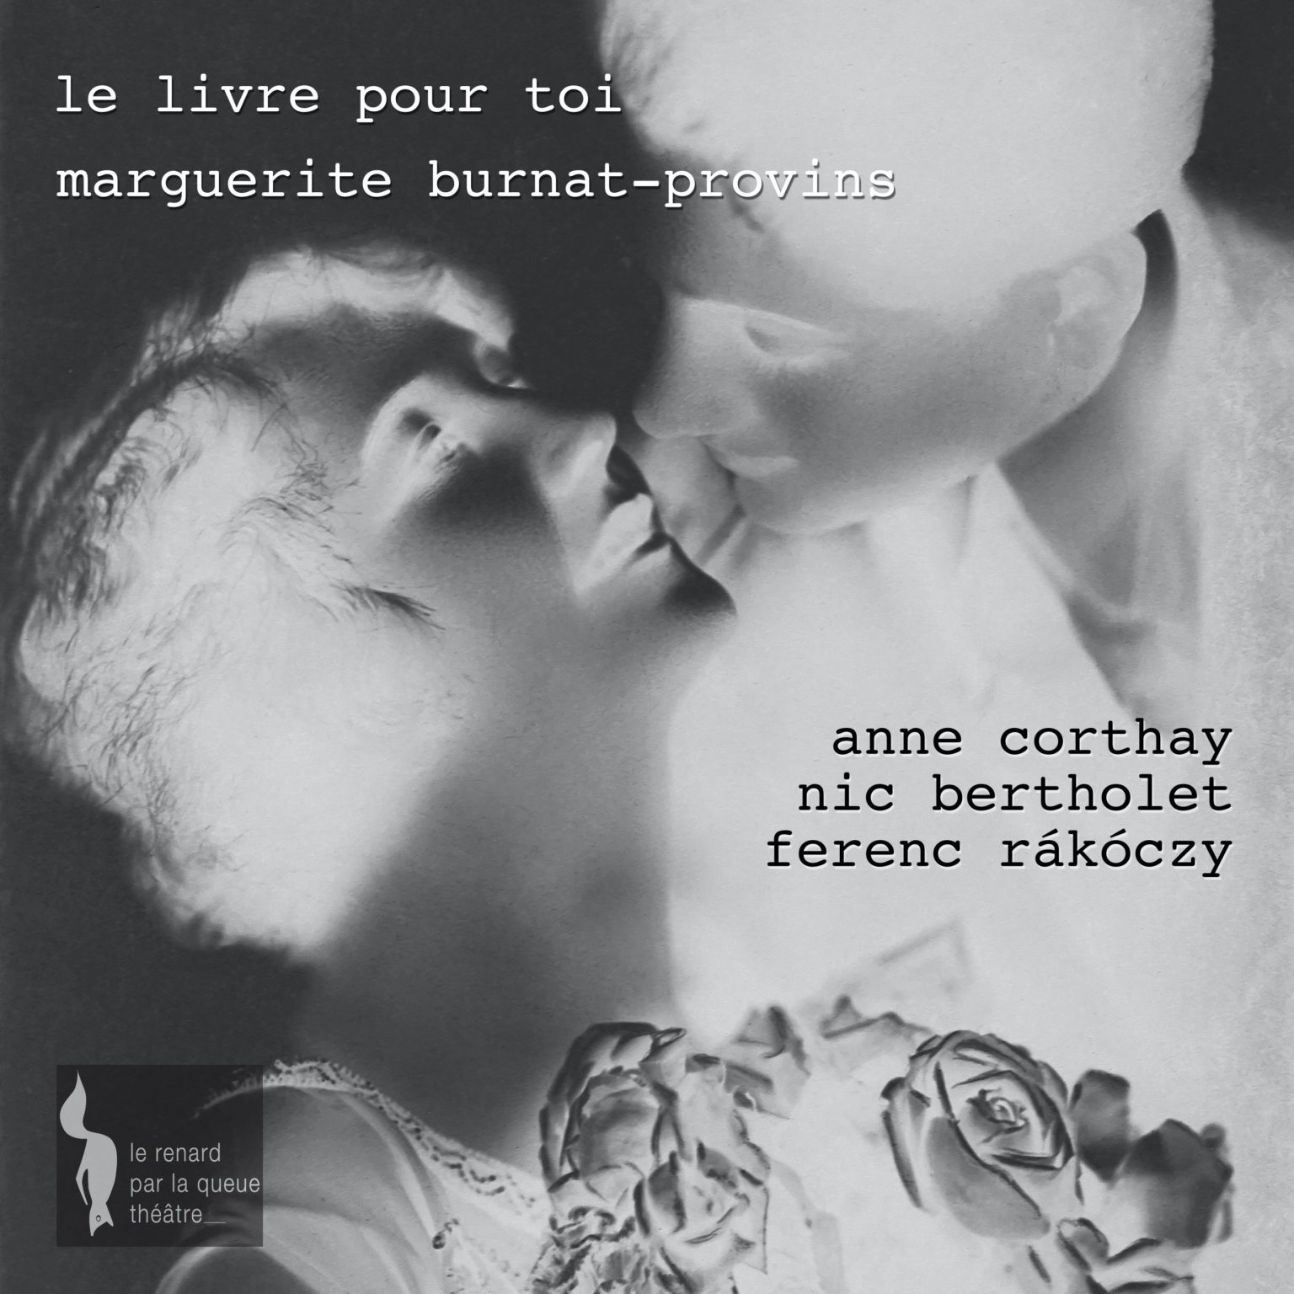 Le Livre pour toi de Marguerite Burnat-Provins (1907) : le scandale d’une poétesse adultère (Printemps de la poésie 2023, Lausanne)